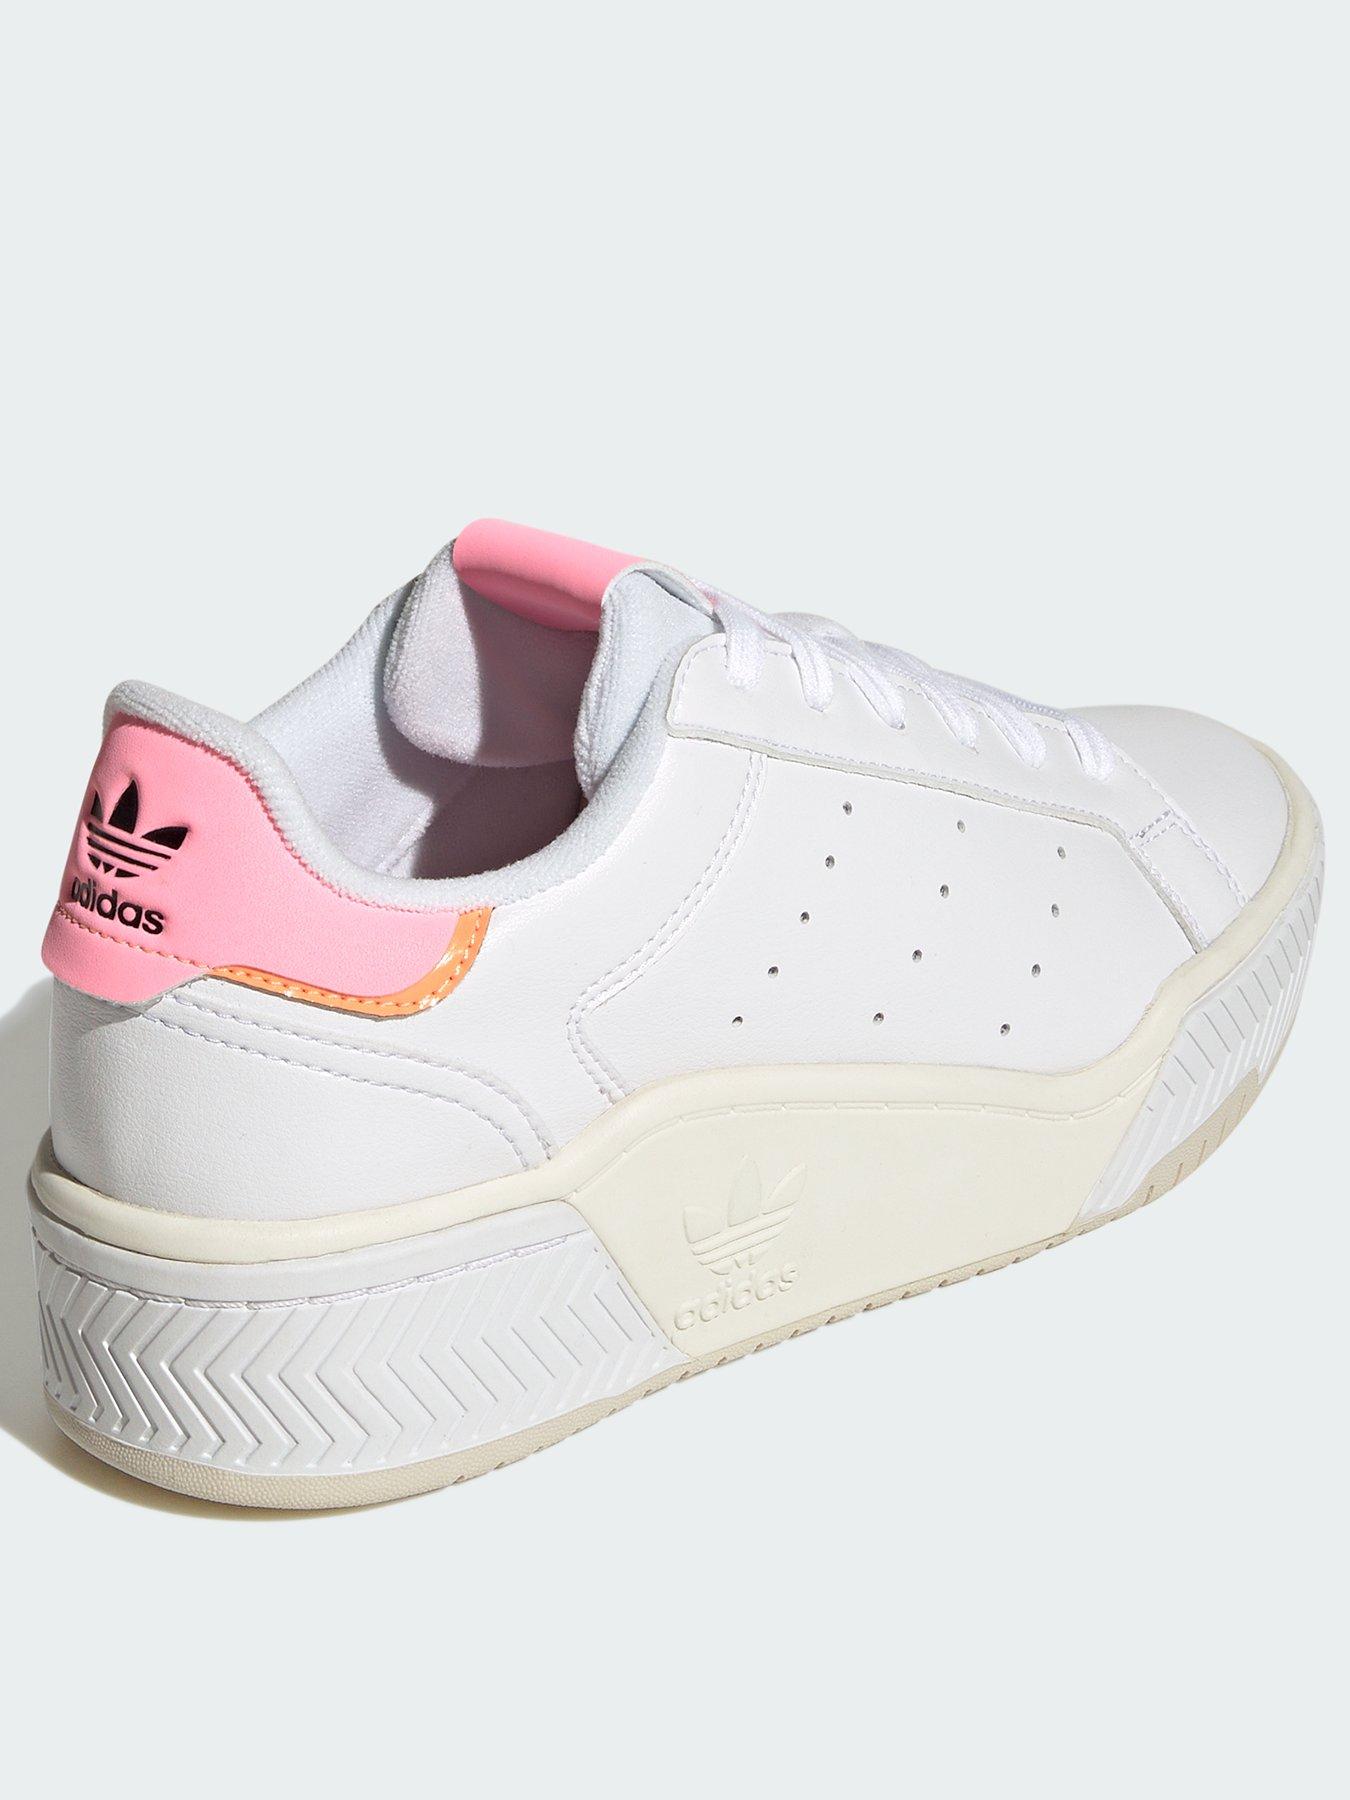 adidas Originals Court Tourino Bold - White/Pink | very.co.uk